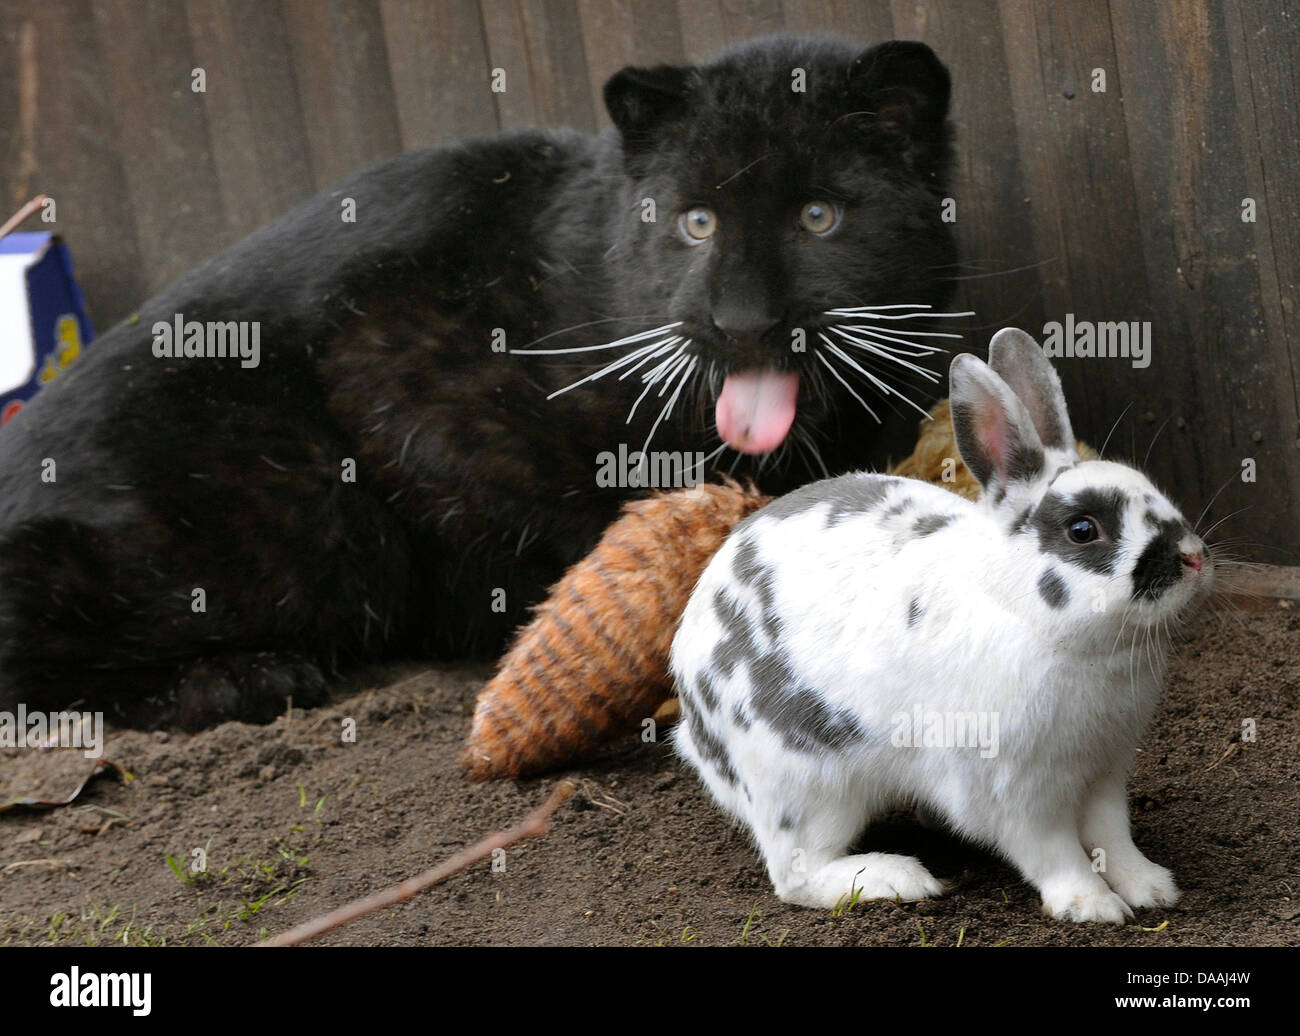 Симбиоз между кроликом и черной пантерой 136. Пантера и кролик. Пантера и заяц. Симбиоз пантеры и кролика. Леопард и кролик.